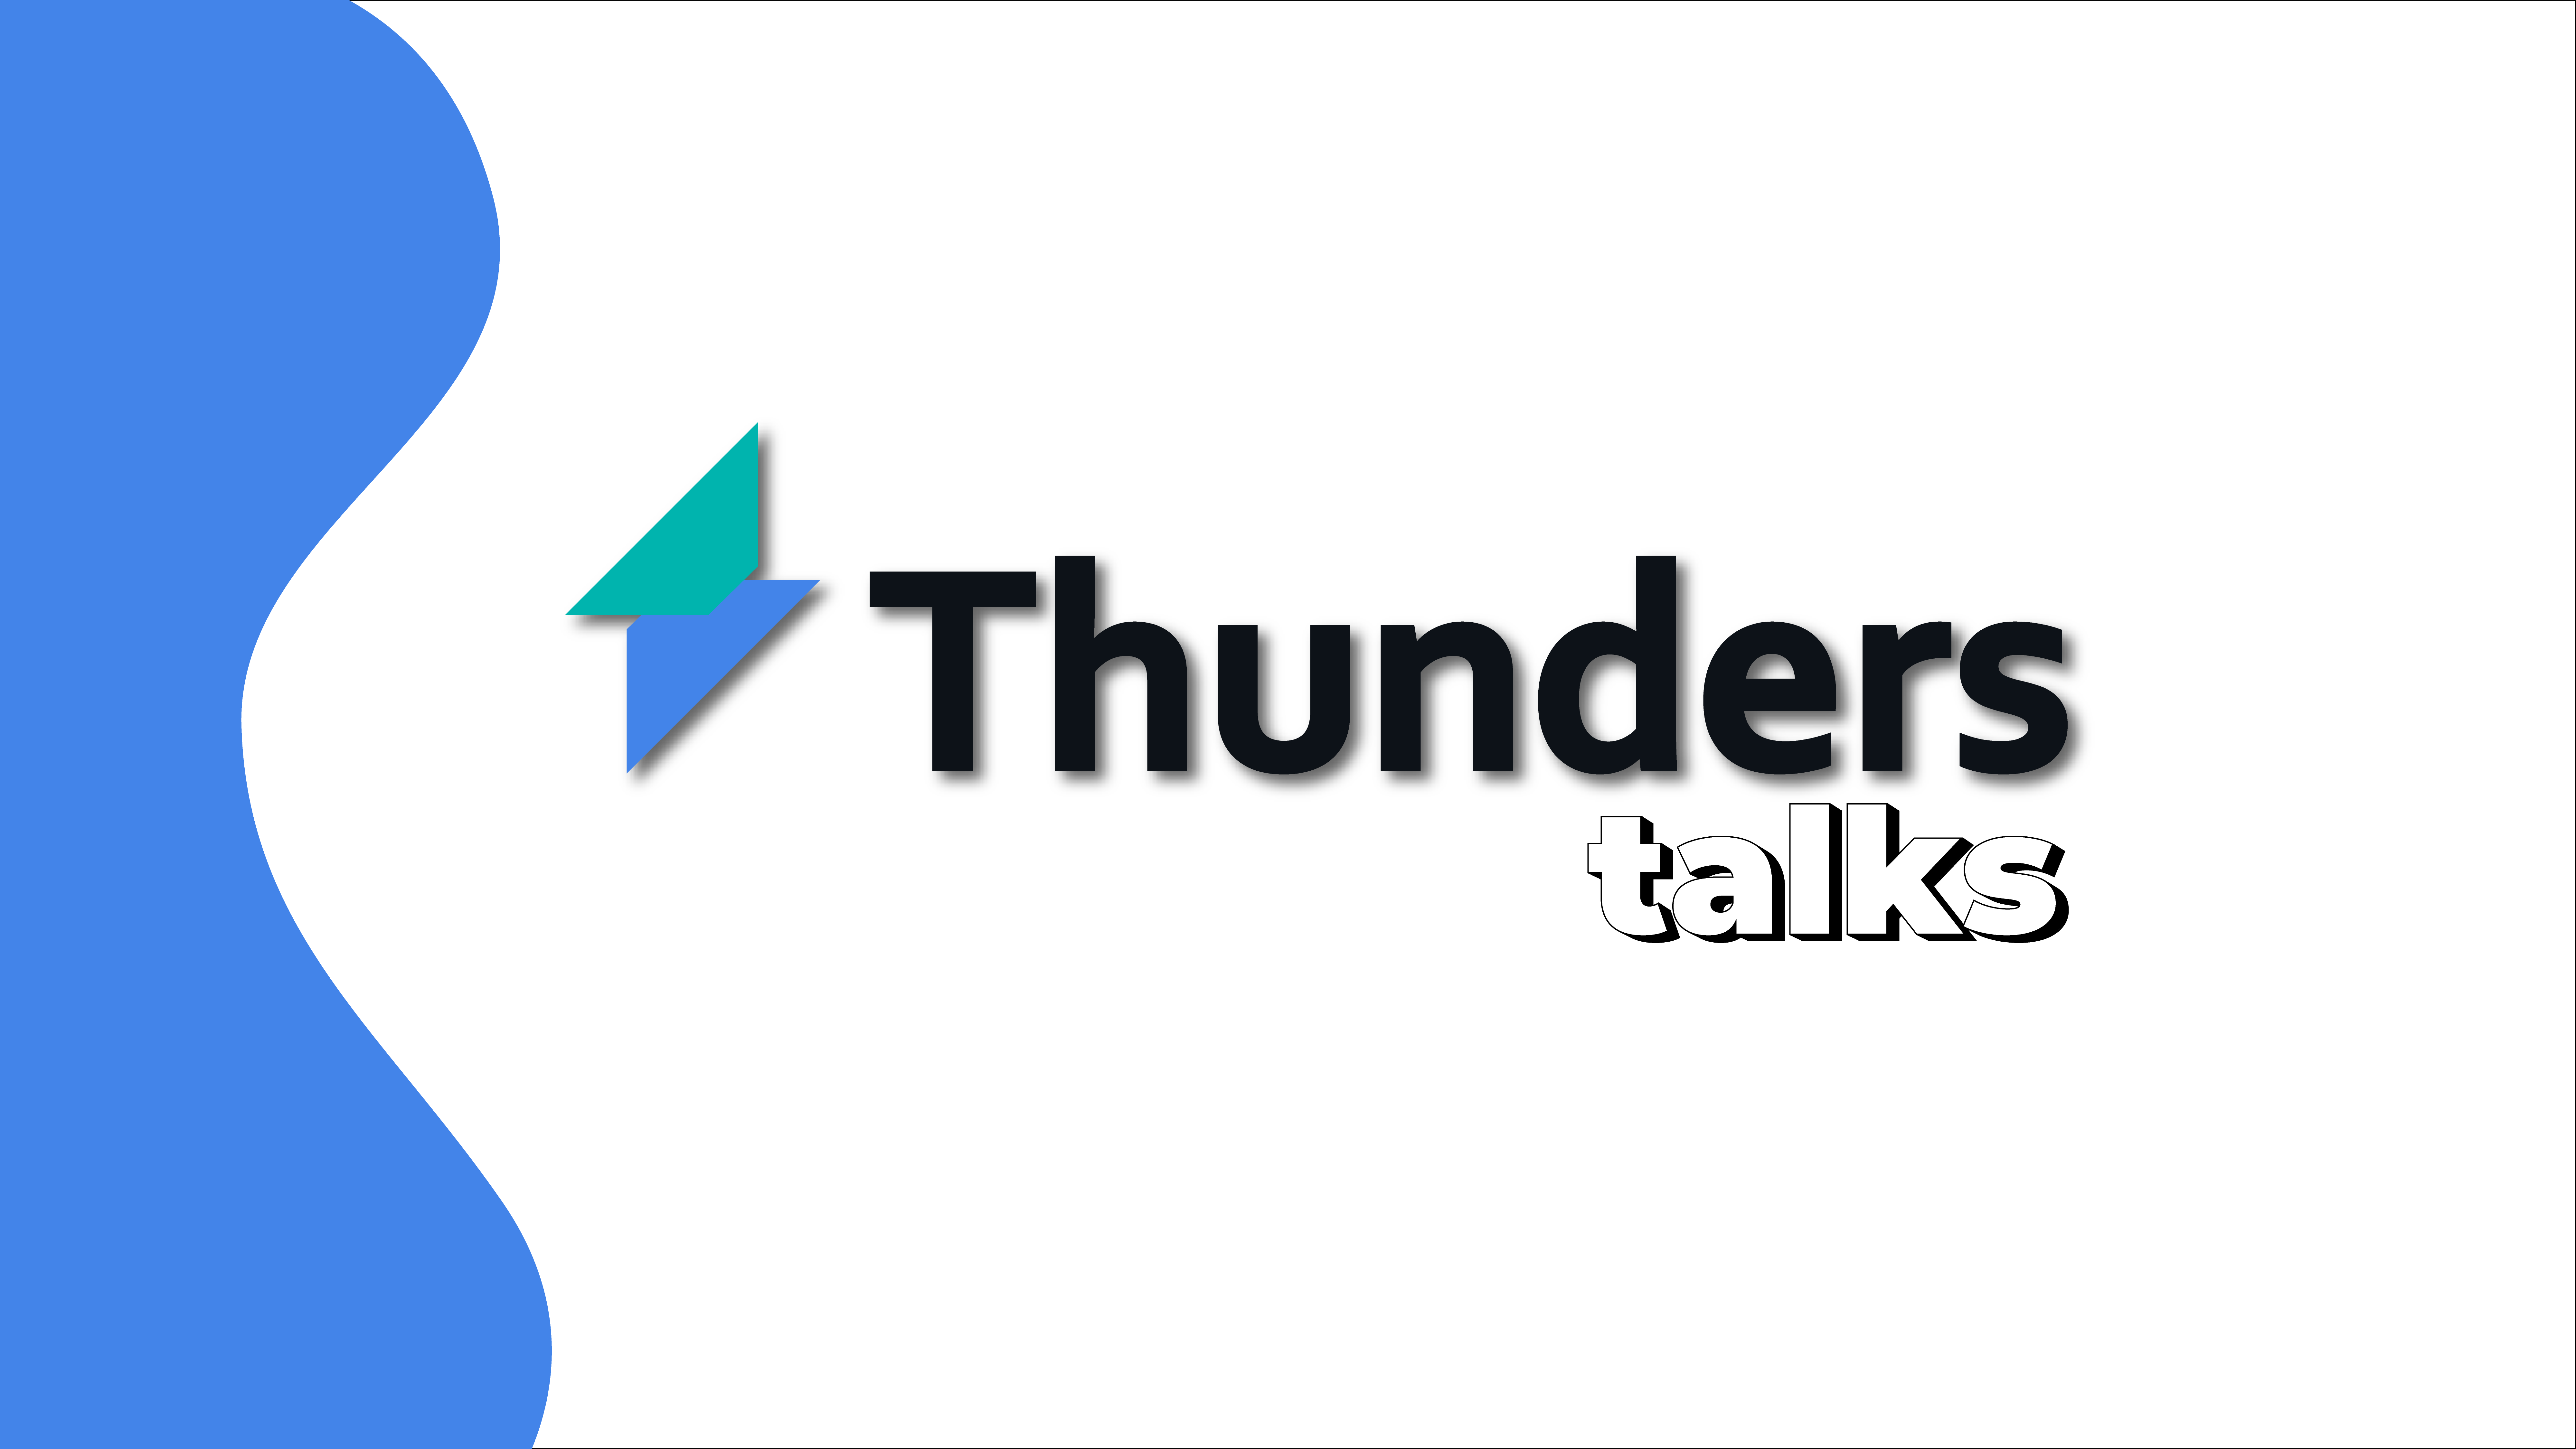 thunders-talks-eolica-offshore